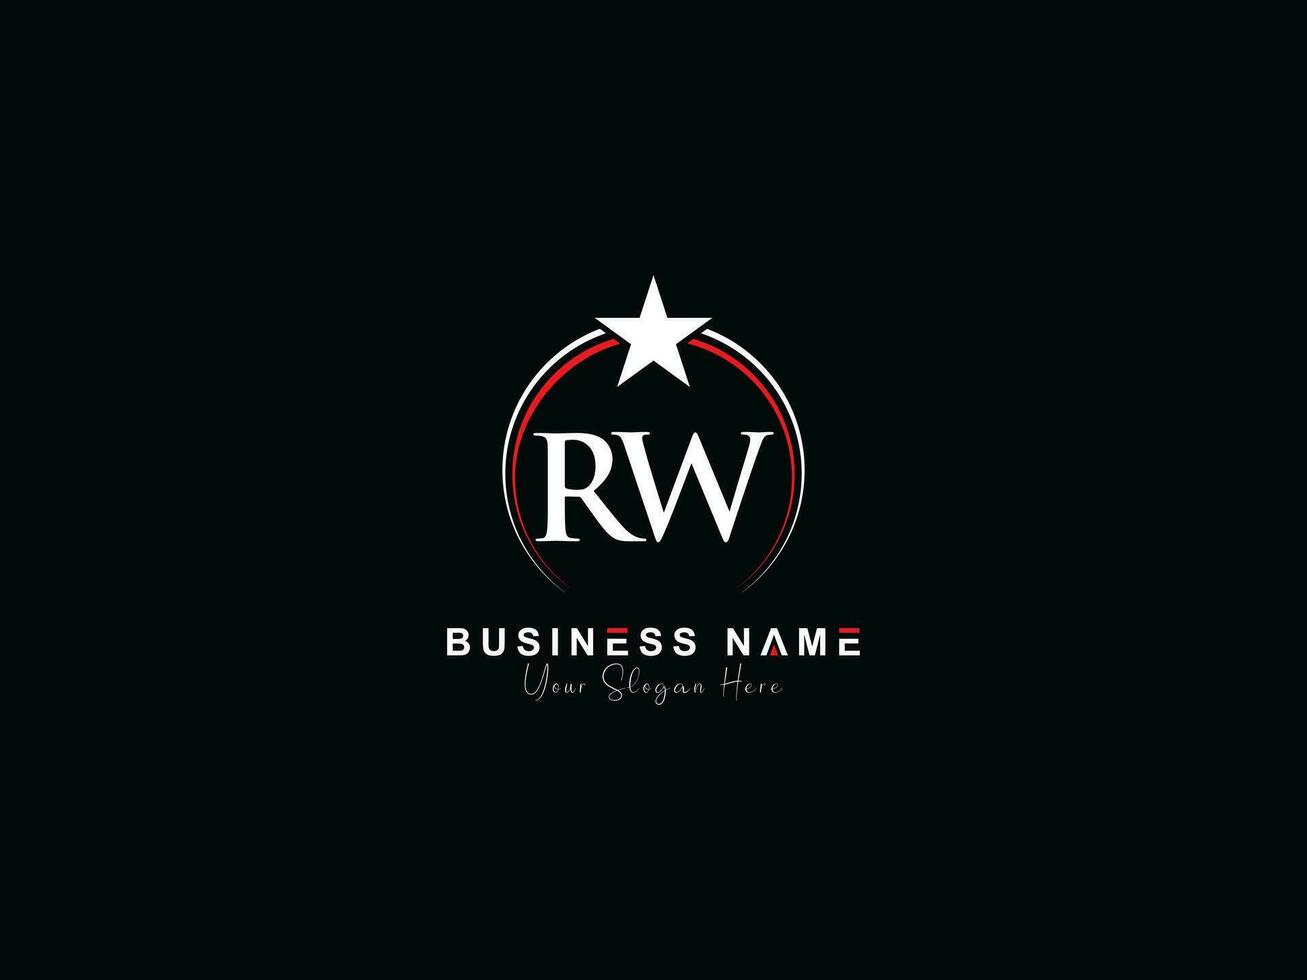 königlich Star rw Kreis Logo, minimalistisch Luxus rw Logo Brief Vektor